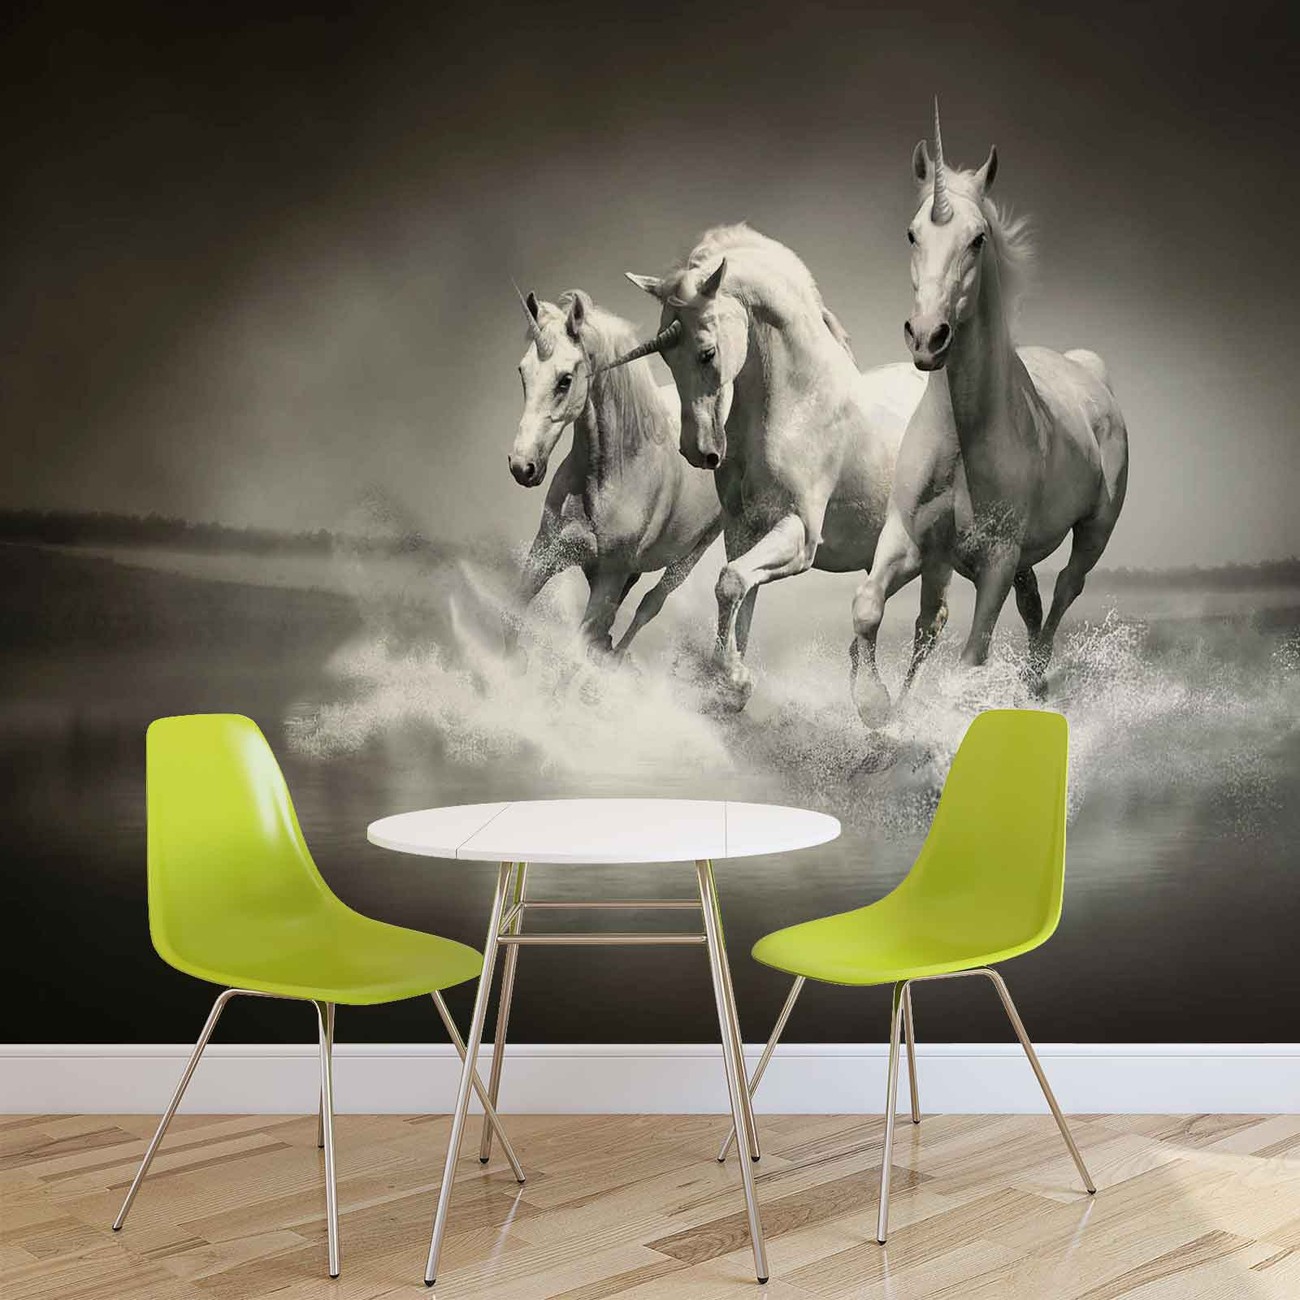 5 - Fotobehang Paarden Zwart Wit , HD Wallpaper & Backgrounds